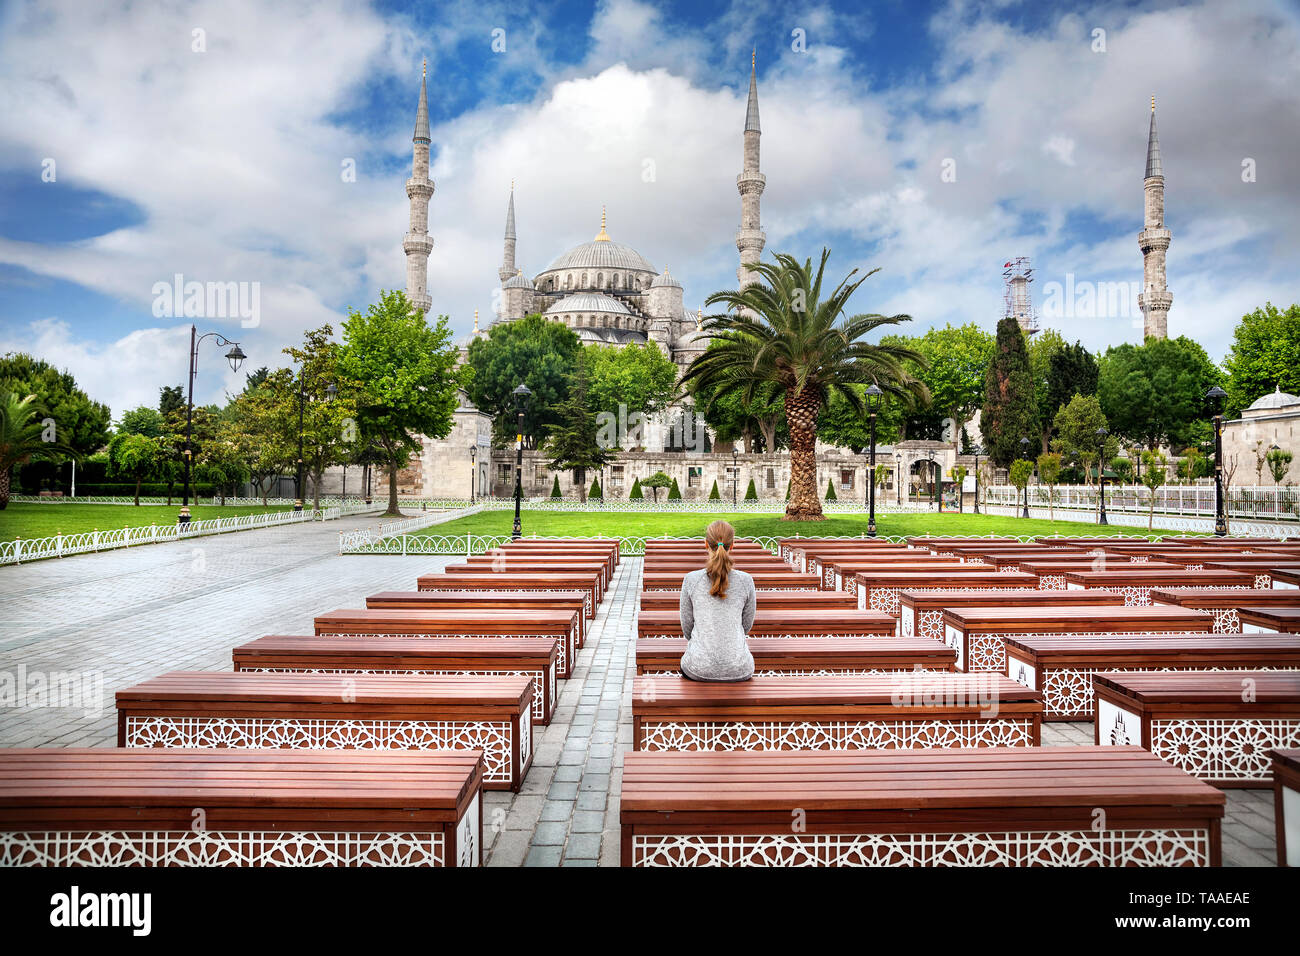 Frau auf der Bank mit Blick auf die Blaue Moschee in Istanbul, Türkei Stockfoto